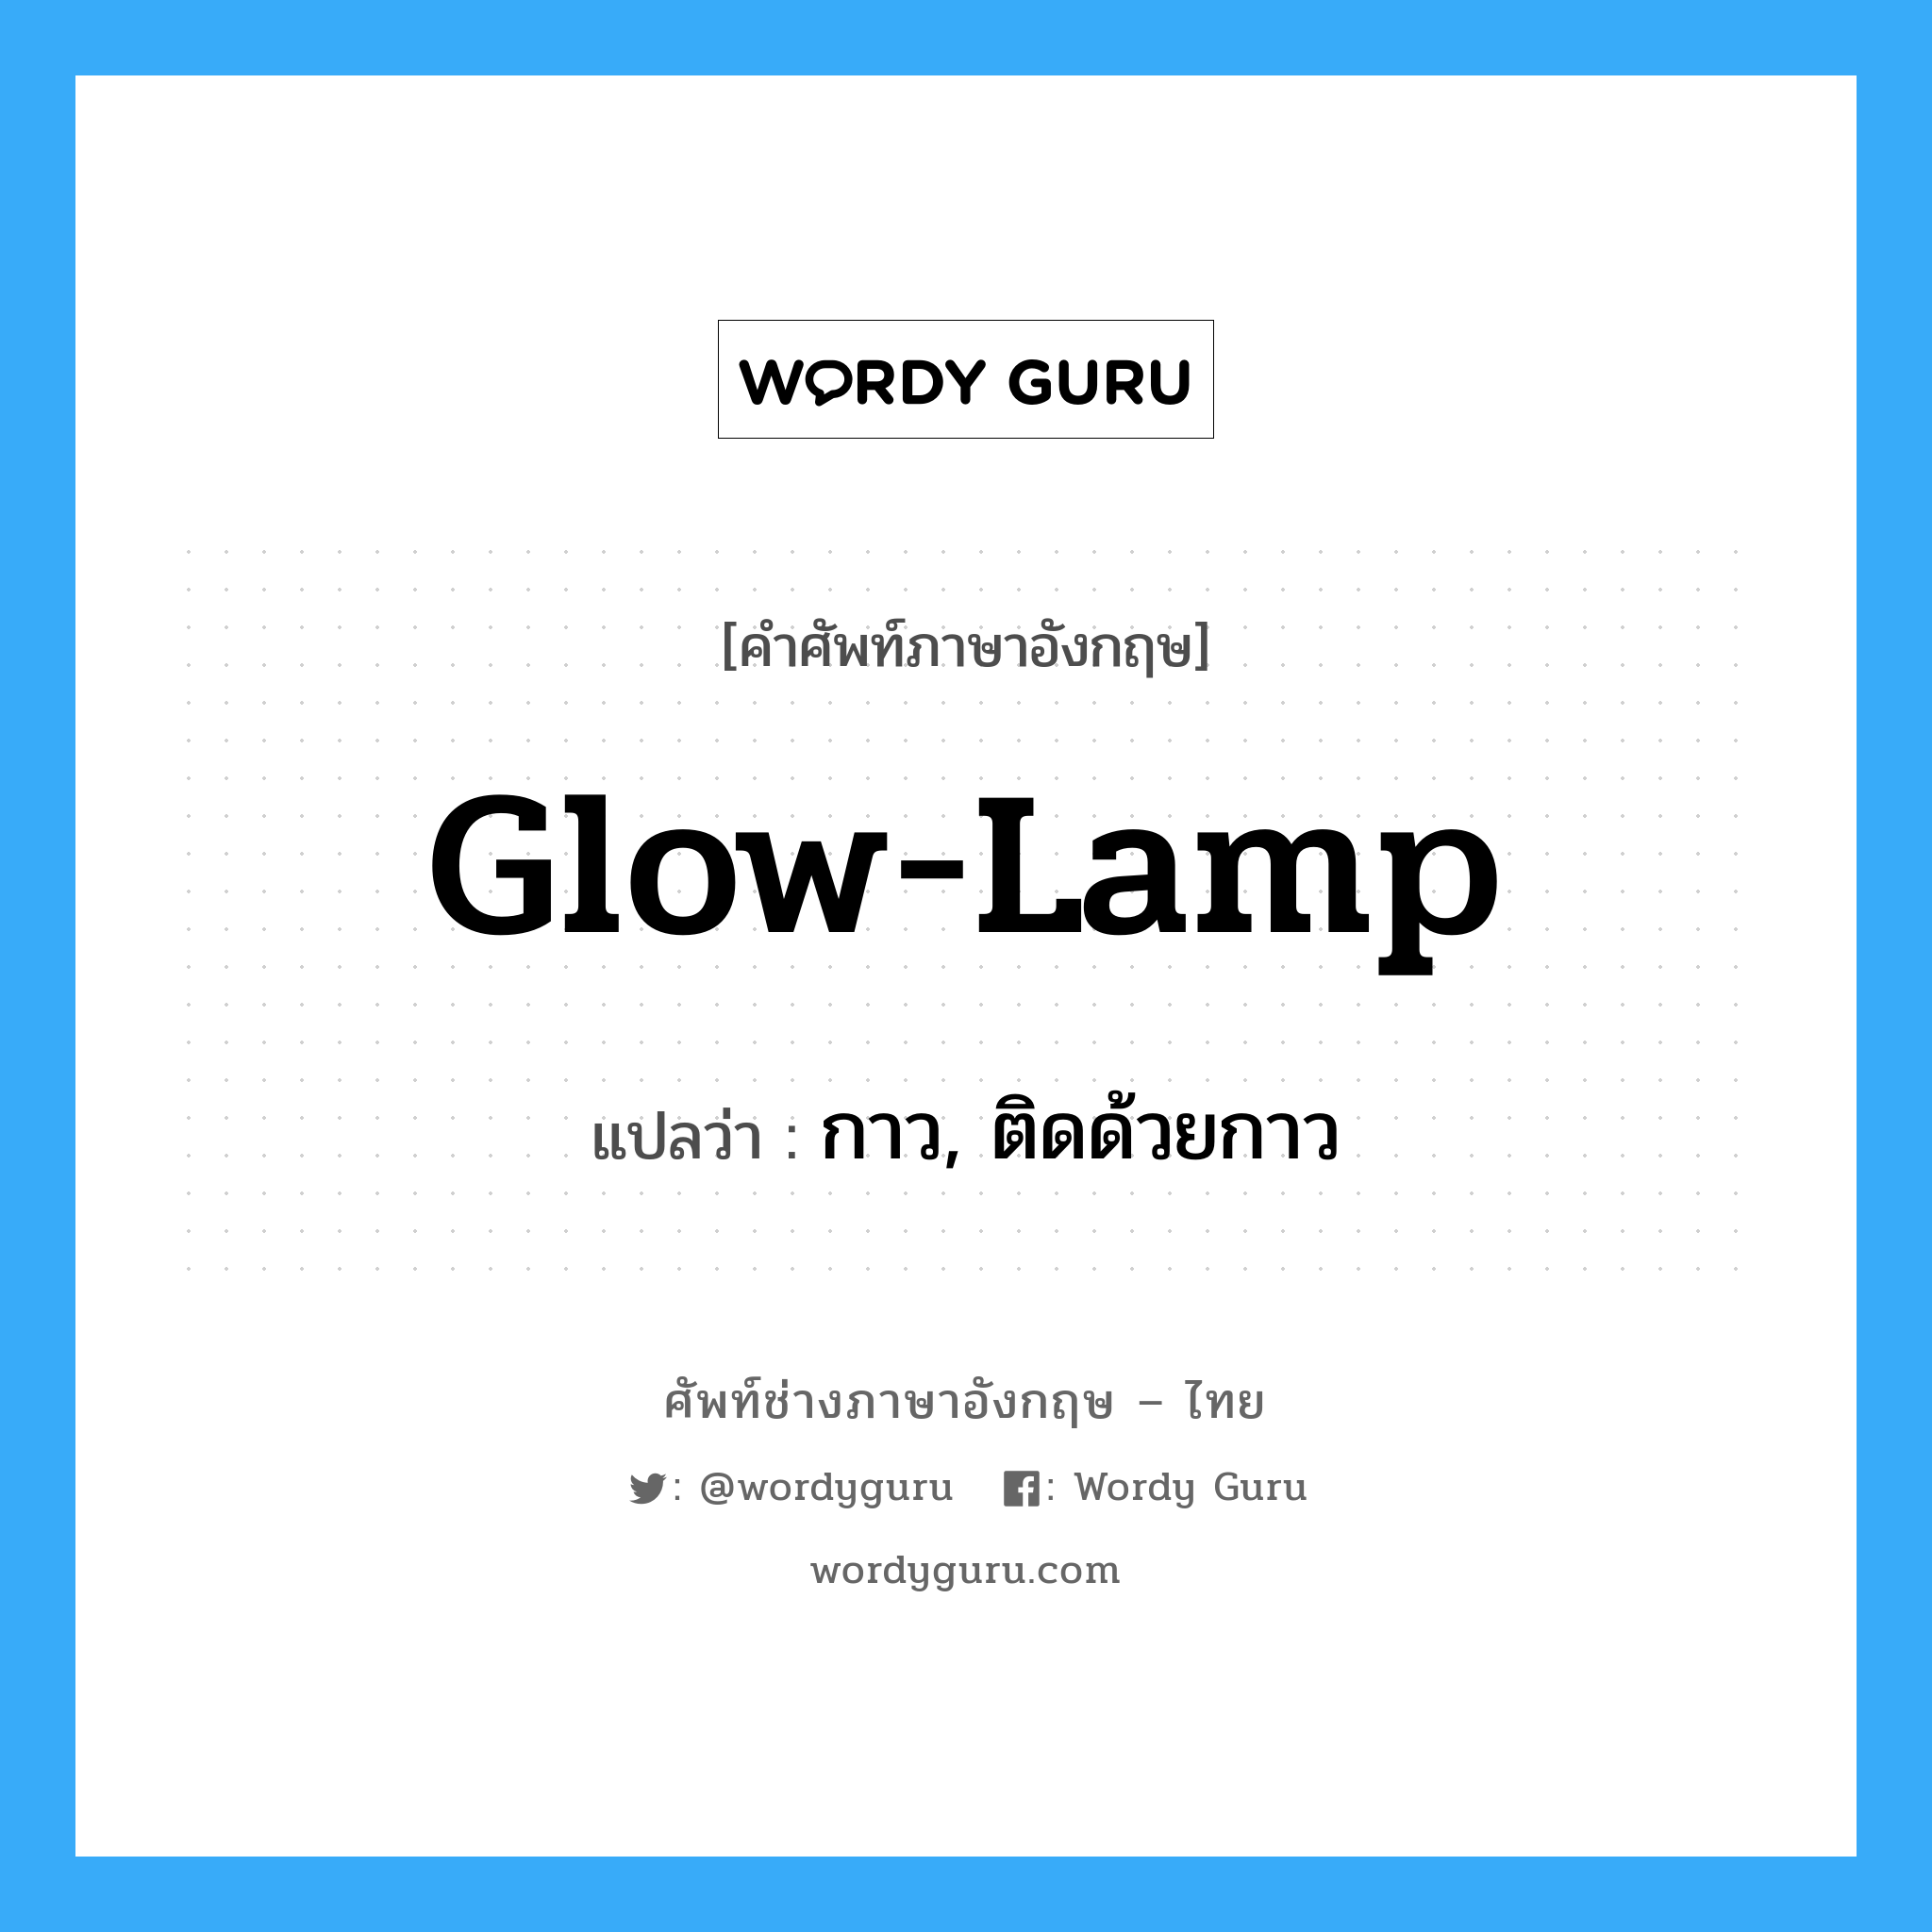 glow-lamp แปลว่า?, คำศัพท์ช่างภาษาอังกฤษ - ไทย glow-lamp คำศัพท์ภาษาอังกฤษ glow-lamp แปลว่า กาว, ติดด้วยกาว